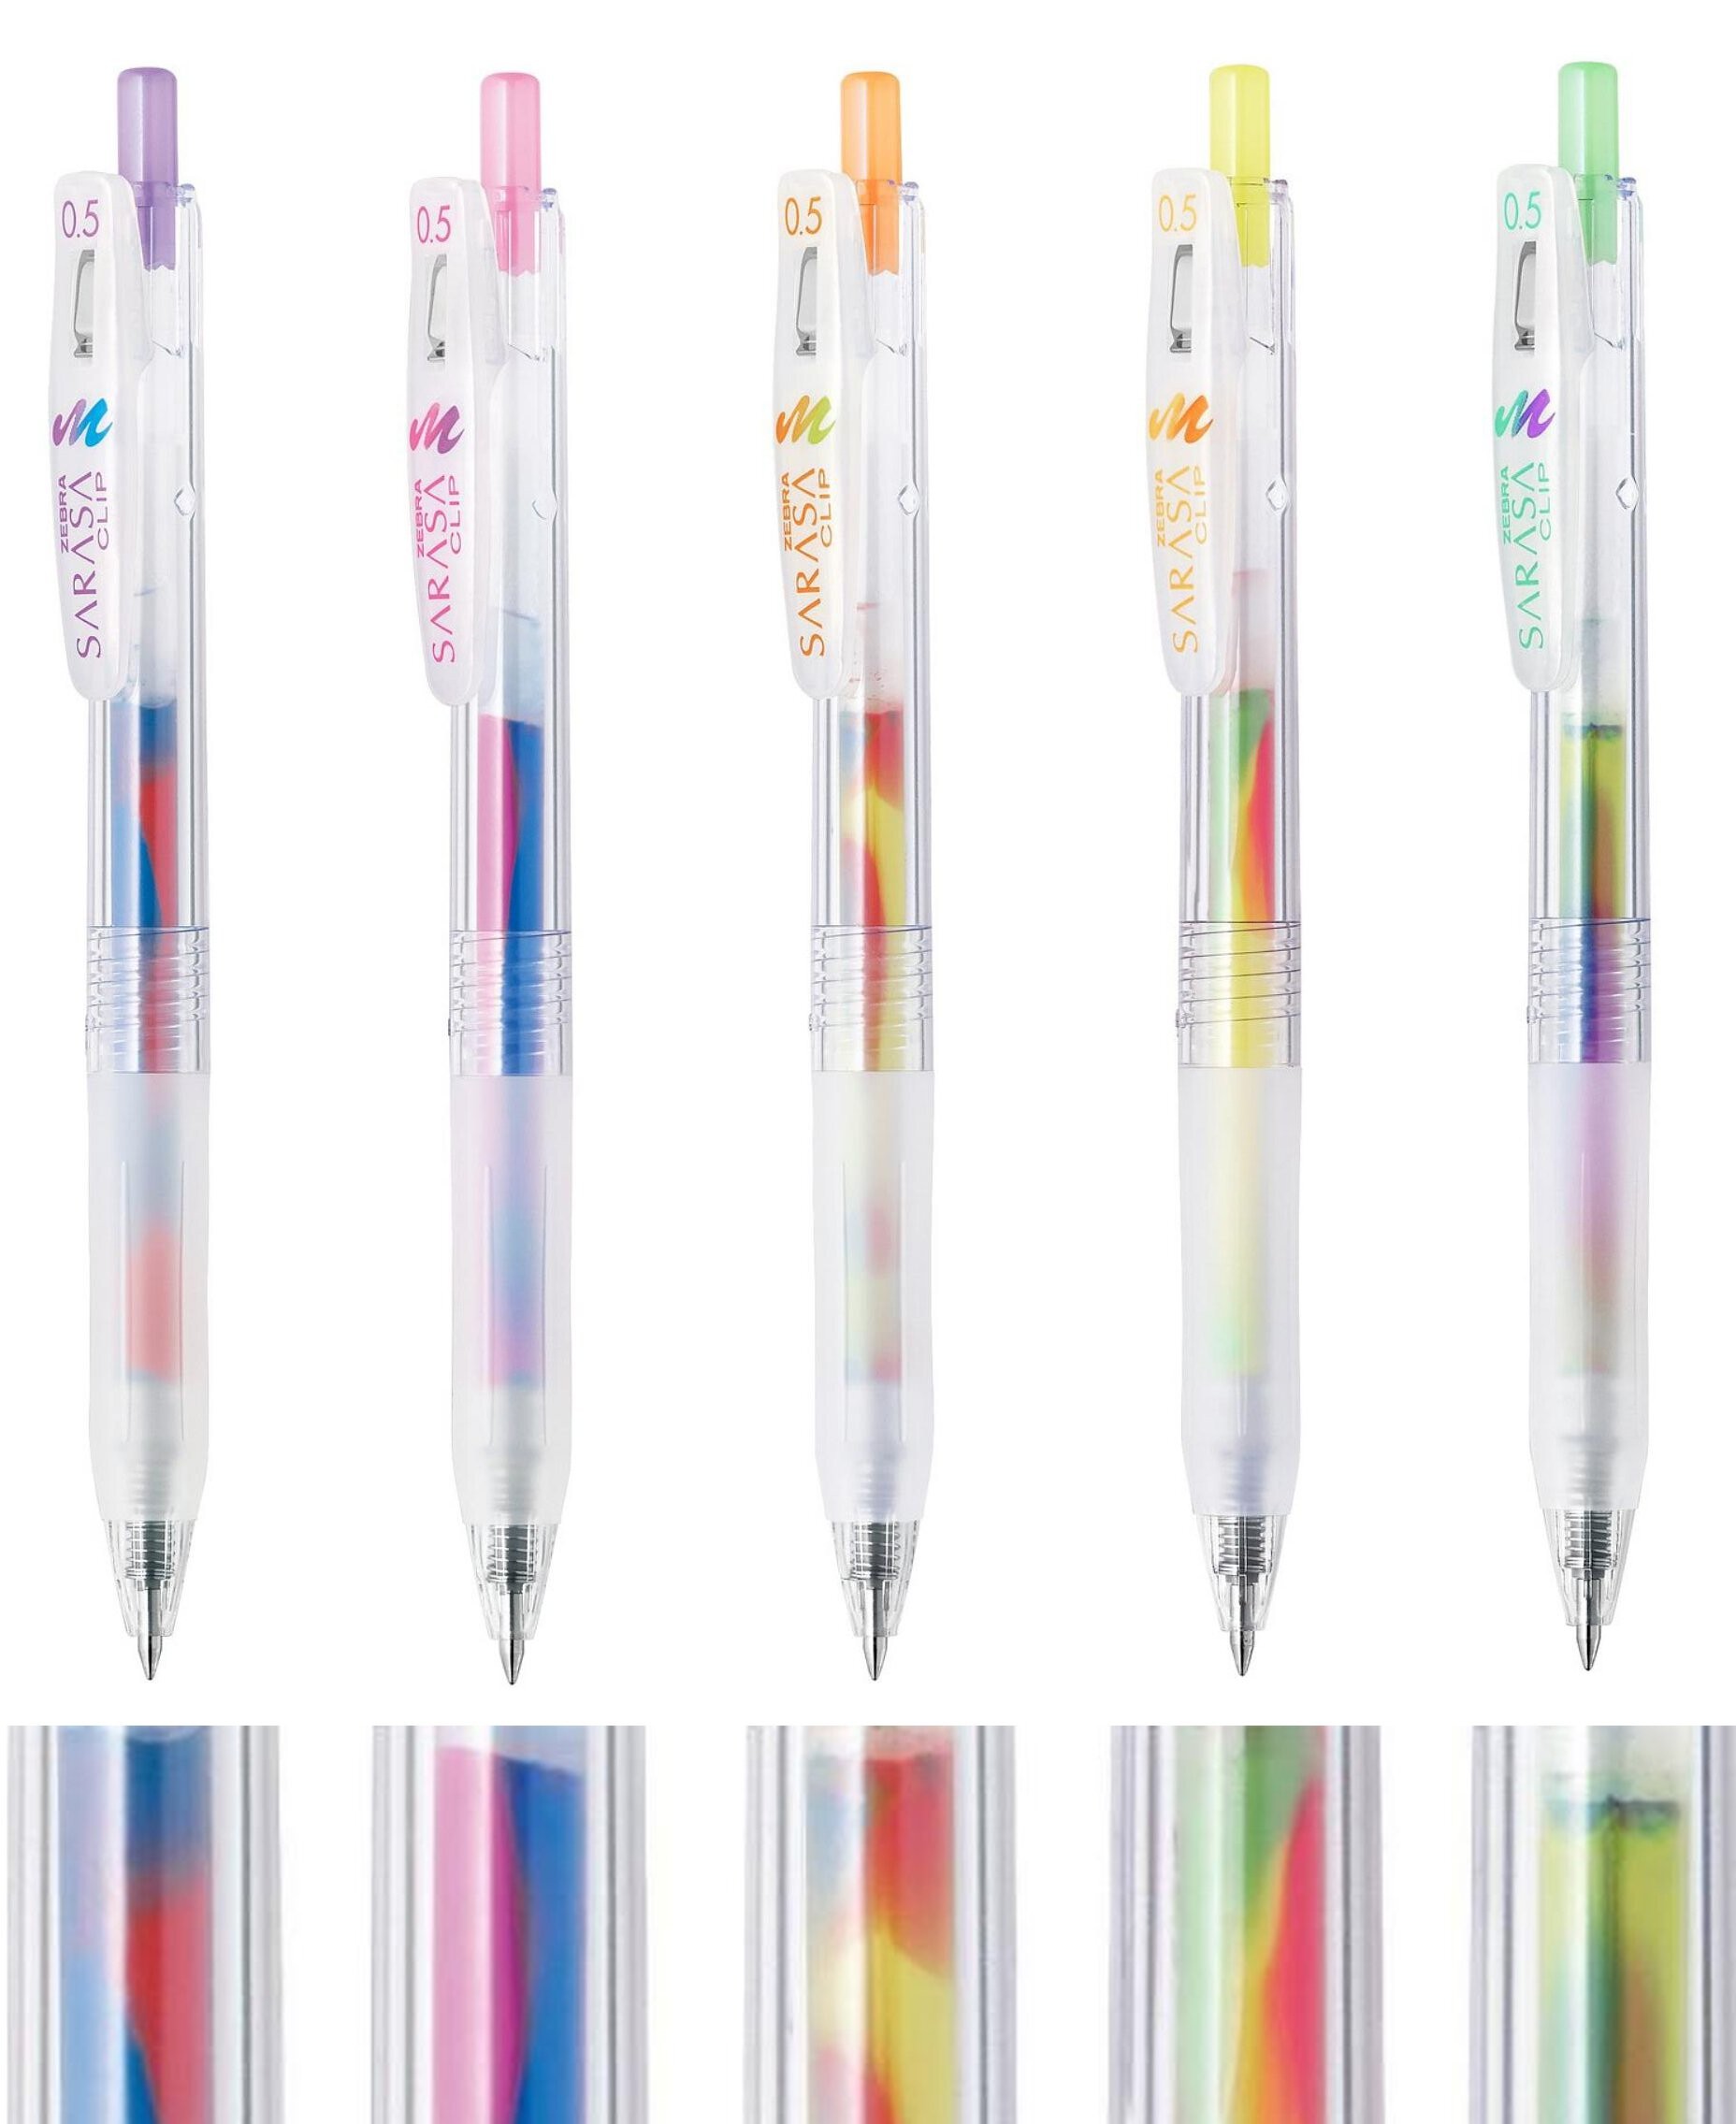 https://minijapanshop.eu/6032/sarasa-clip-marble-color-set-with-5-pens-rechargeable-jj75-5c-mb-by-zebra.jpg